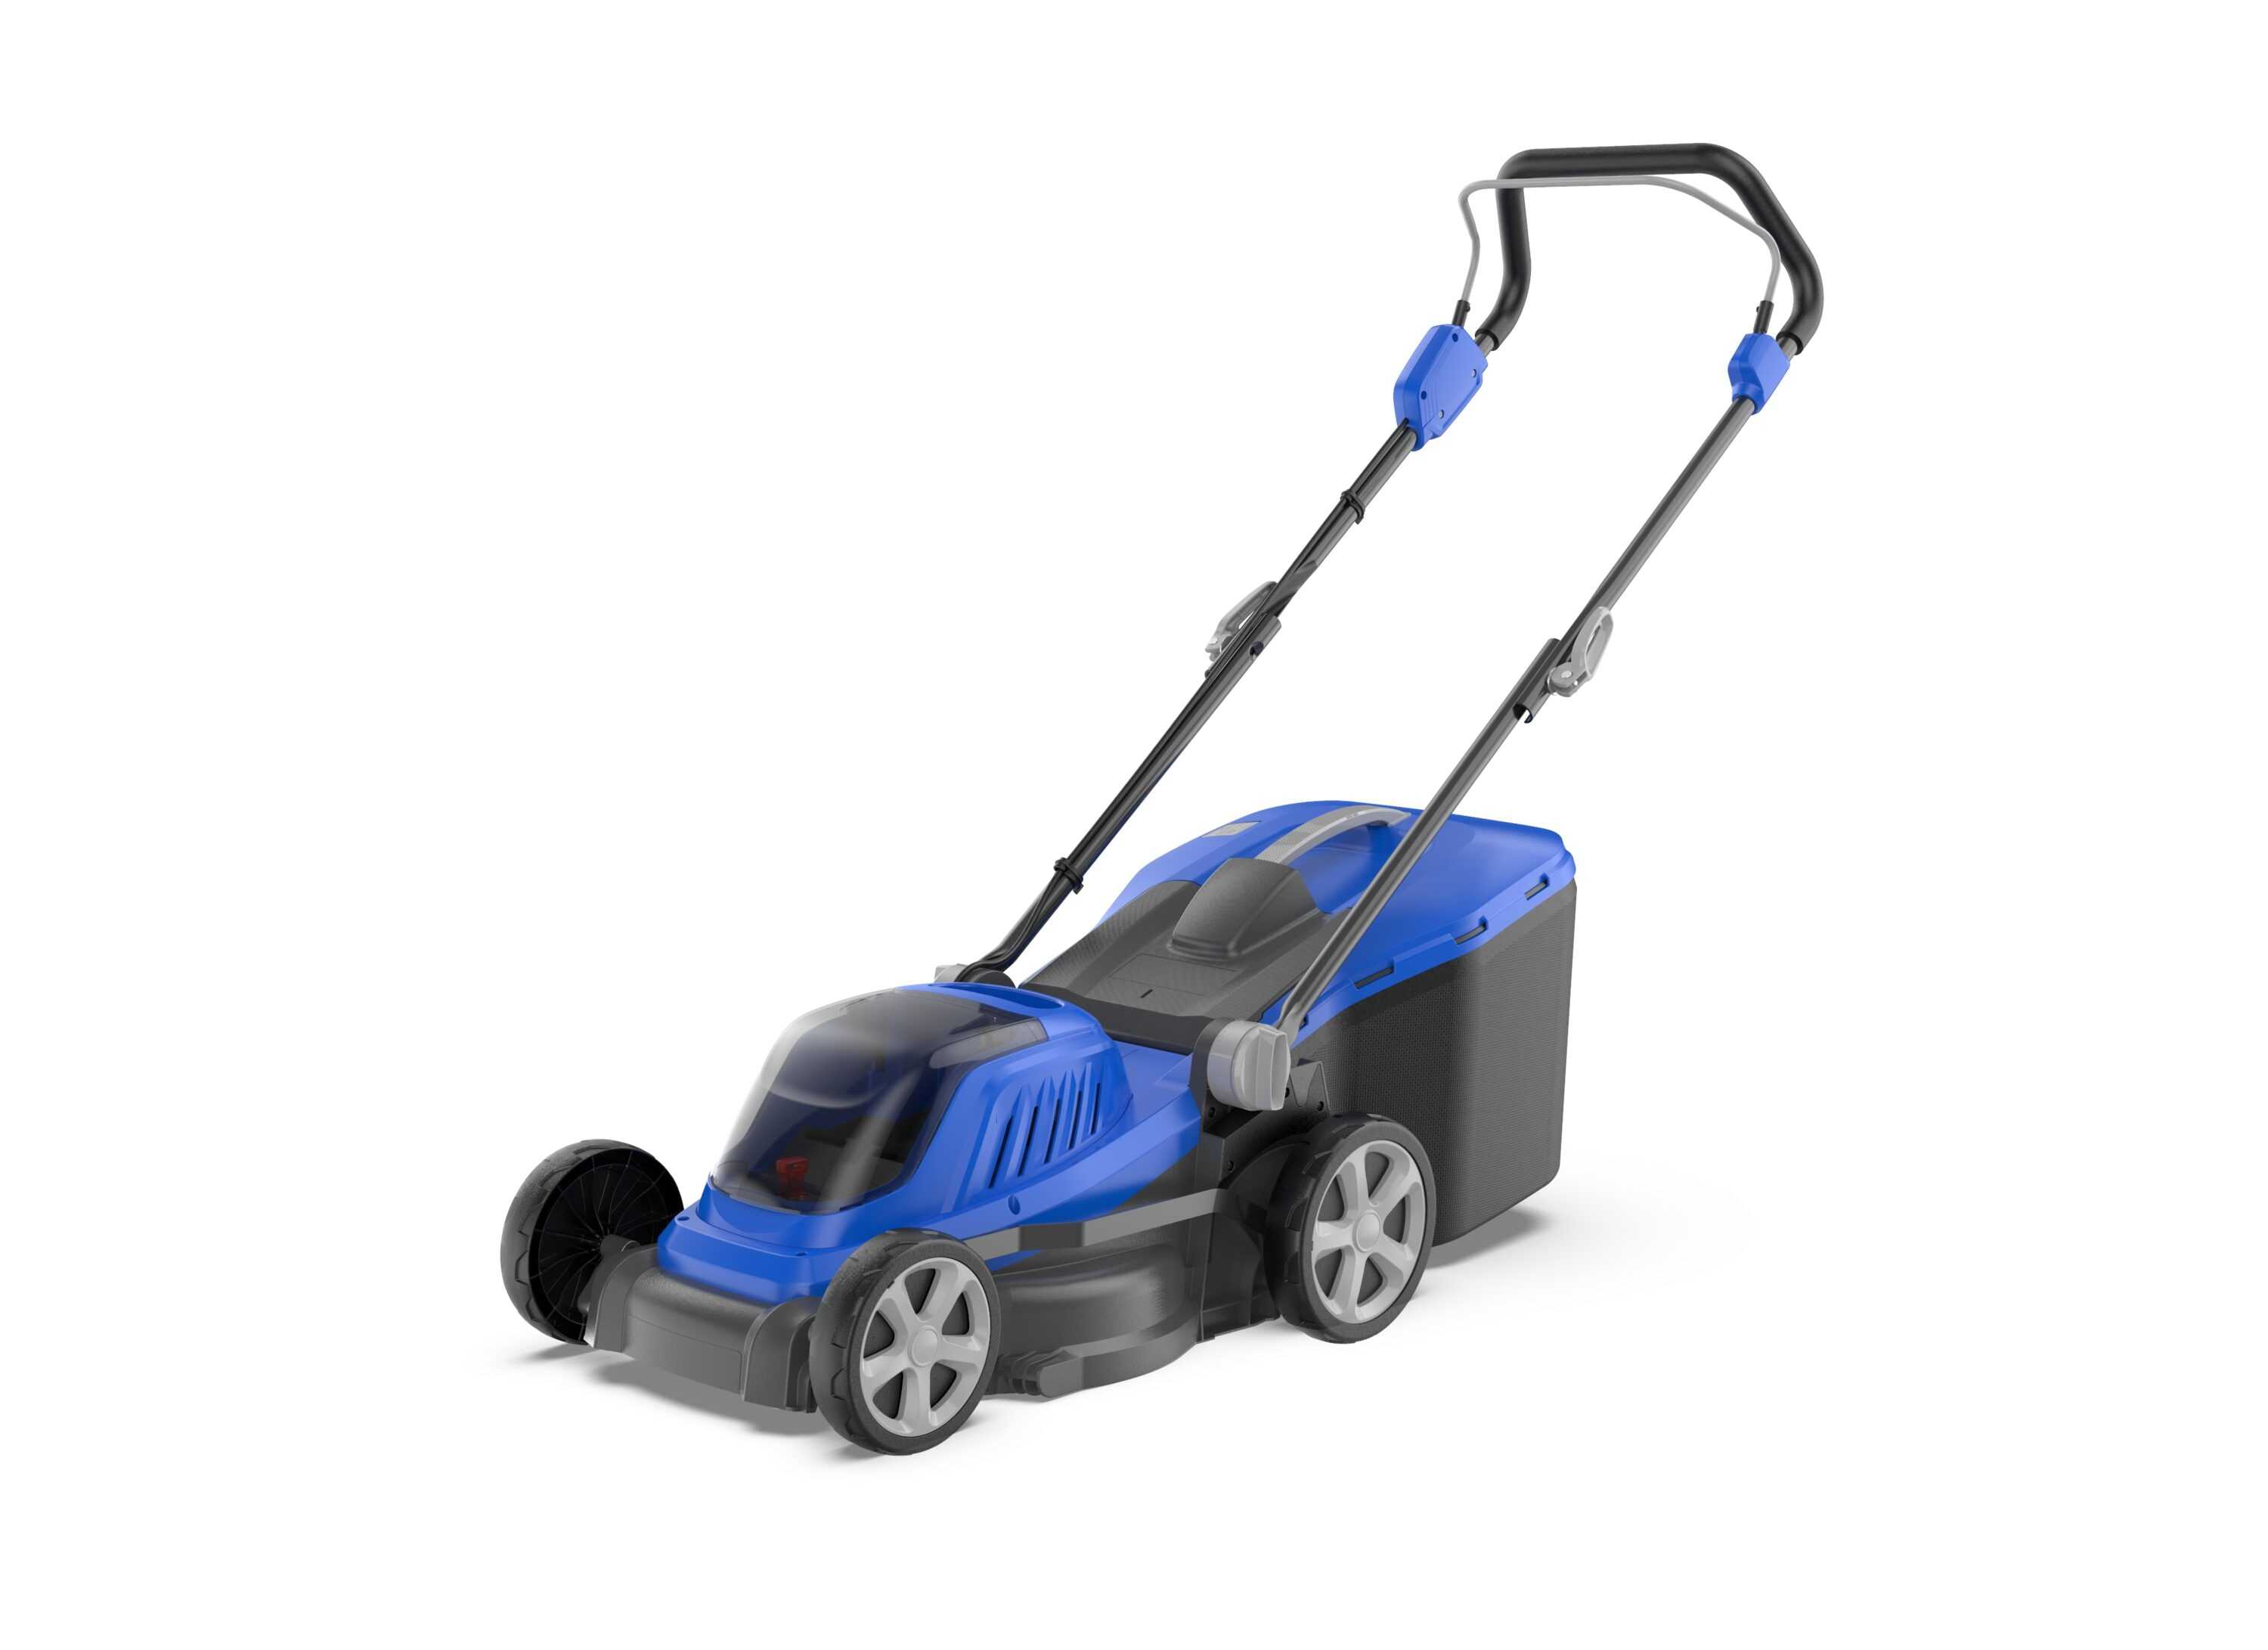 Wild Badger Lawn Mower 40V Brushless 18” Cordless